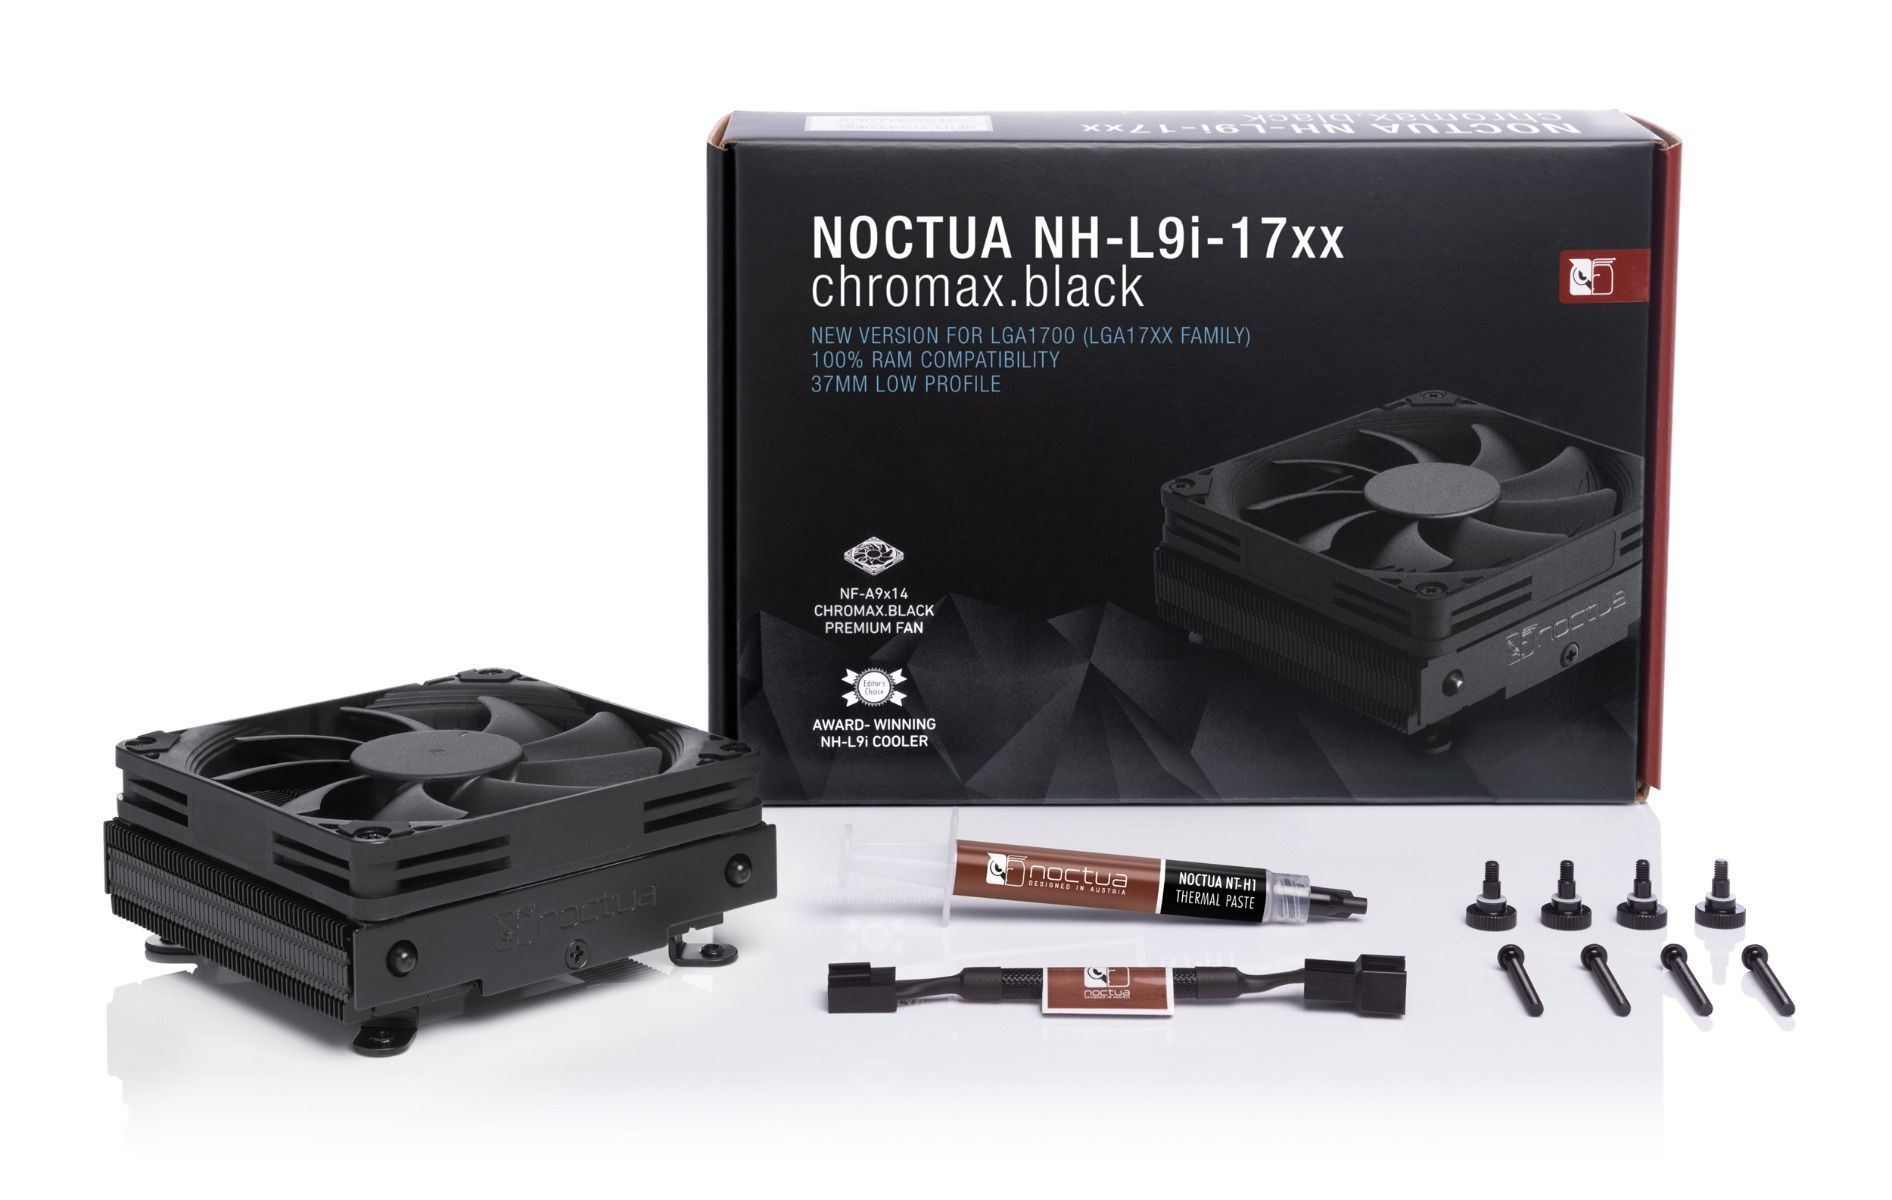 Noctua - Cooler CPU Noctua NH-L9i 17xx chromax.black 92mm